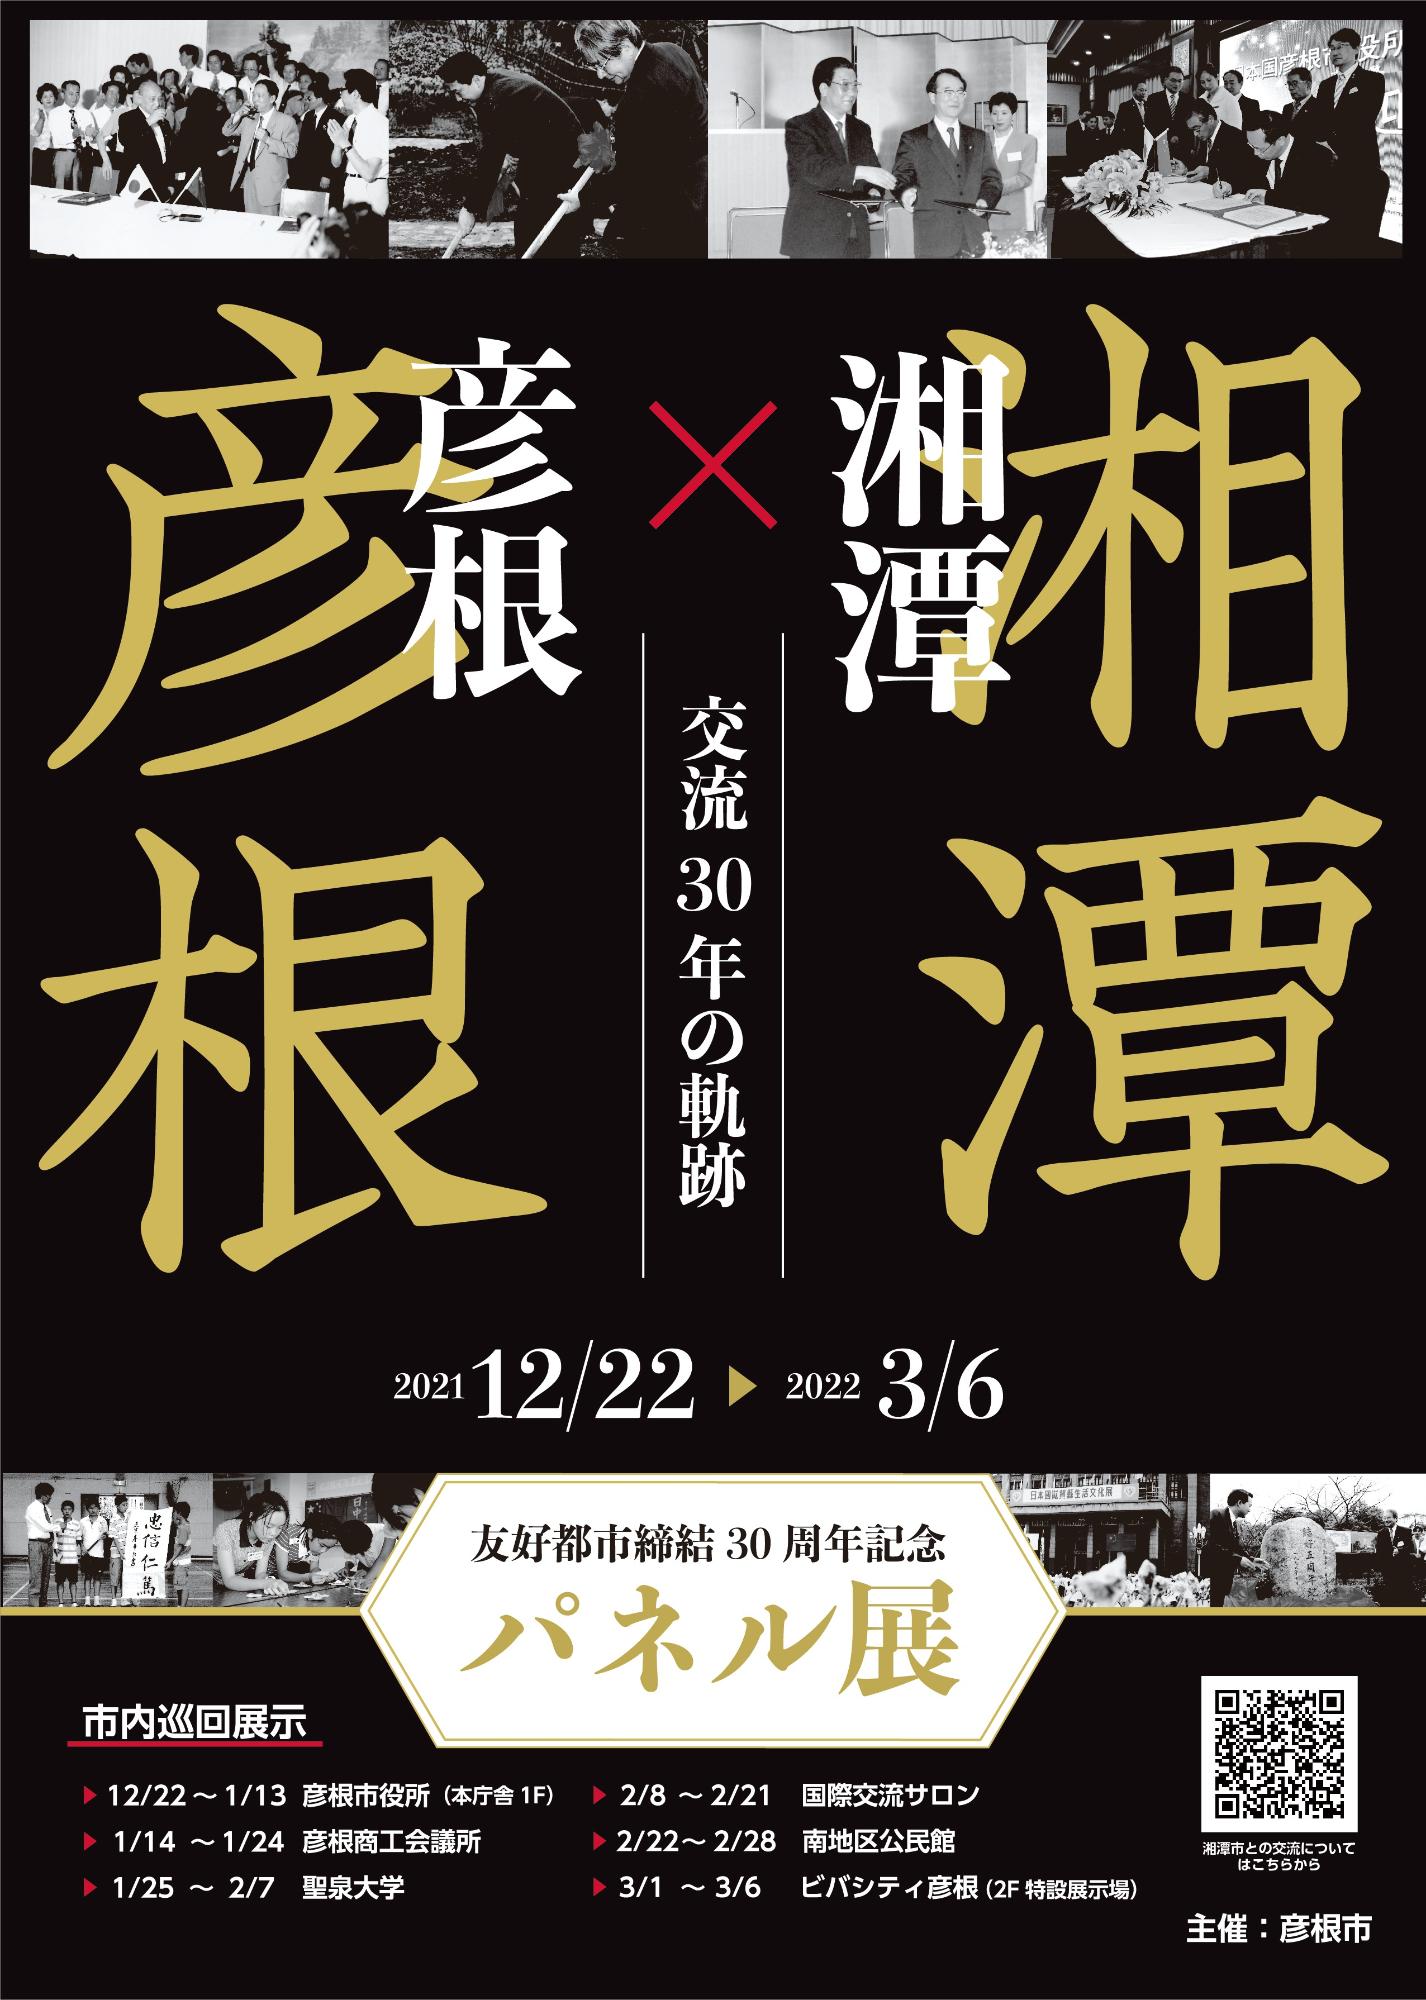 彦根市湘潭市友好都市締結30周年記念パネル展のポスター画像